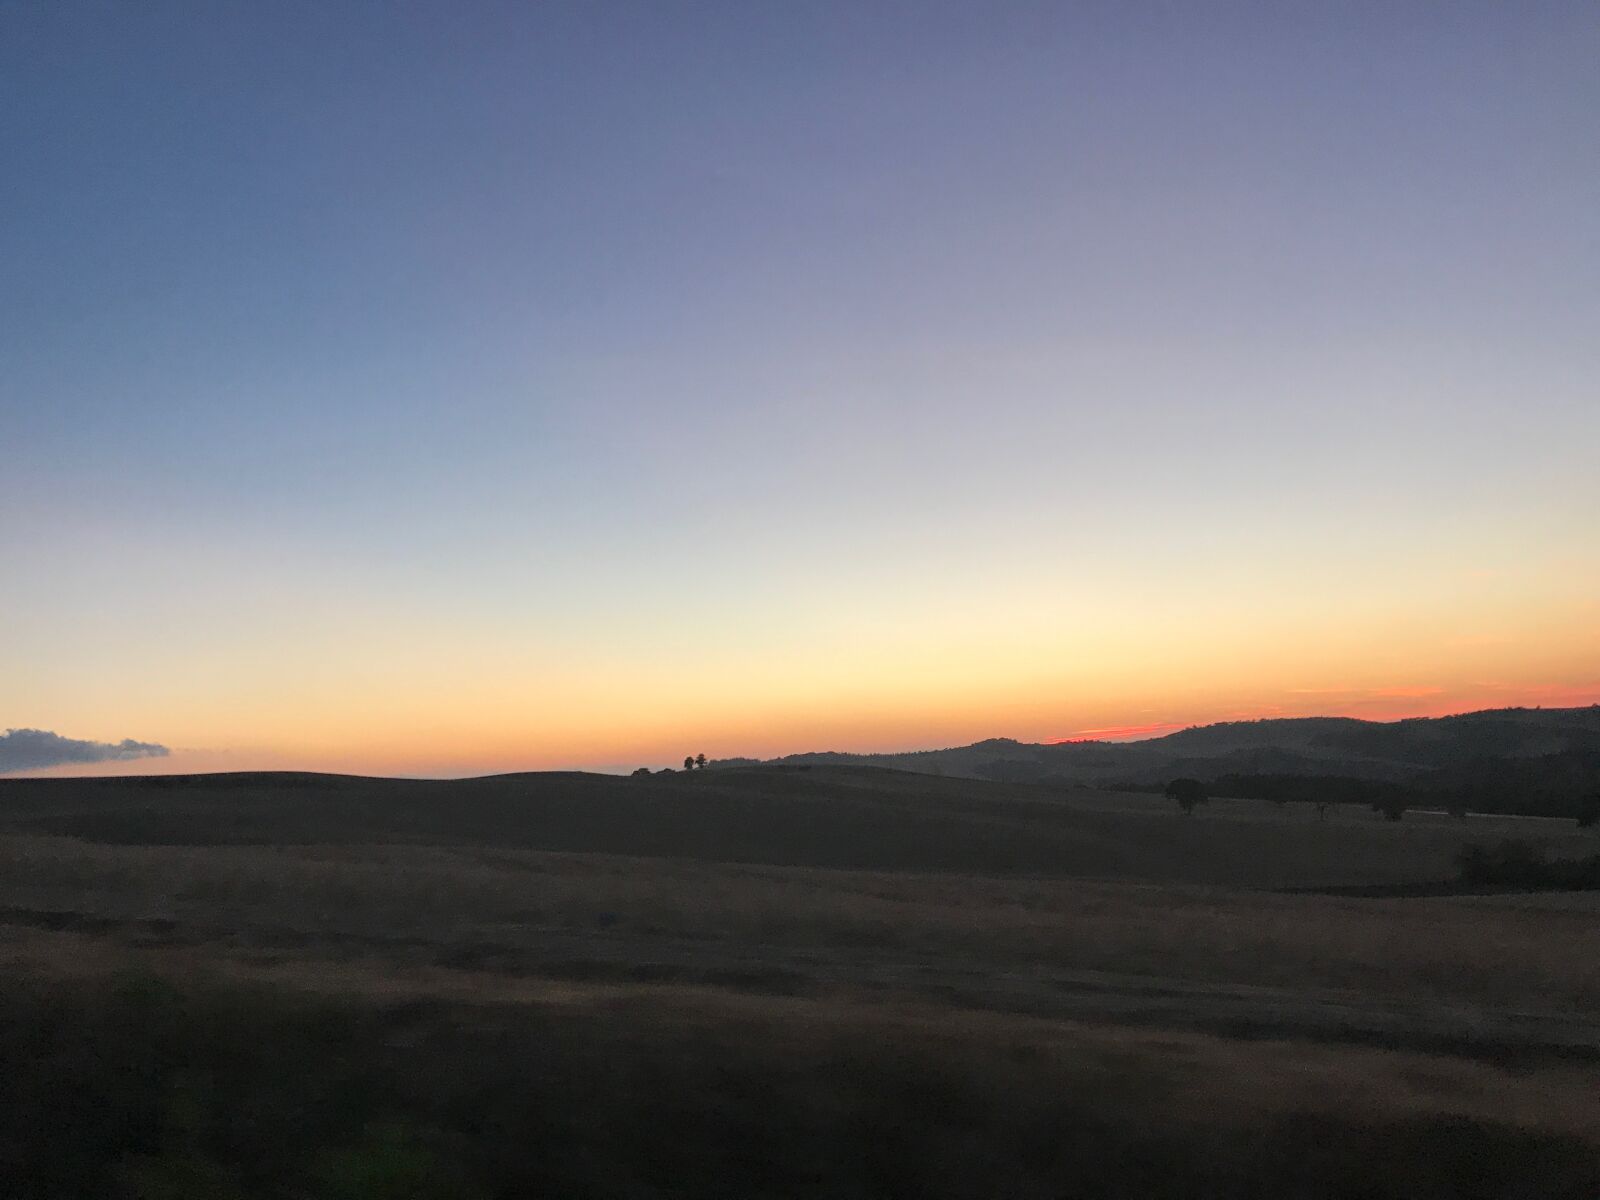 Apple iPhone 7 sample photo. Sunset, dusk, italy photography